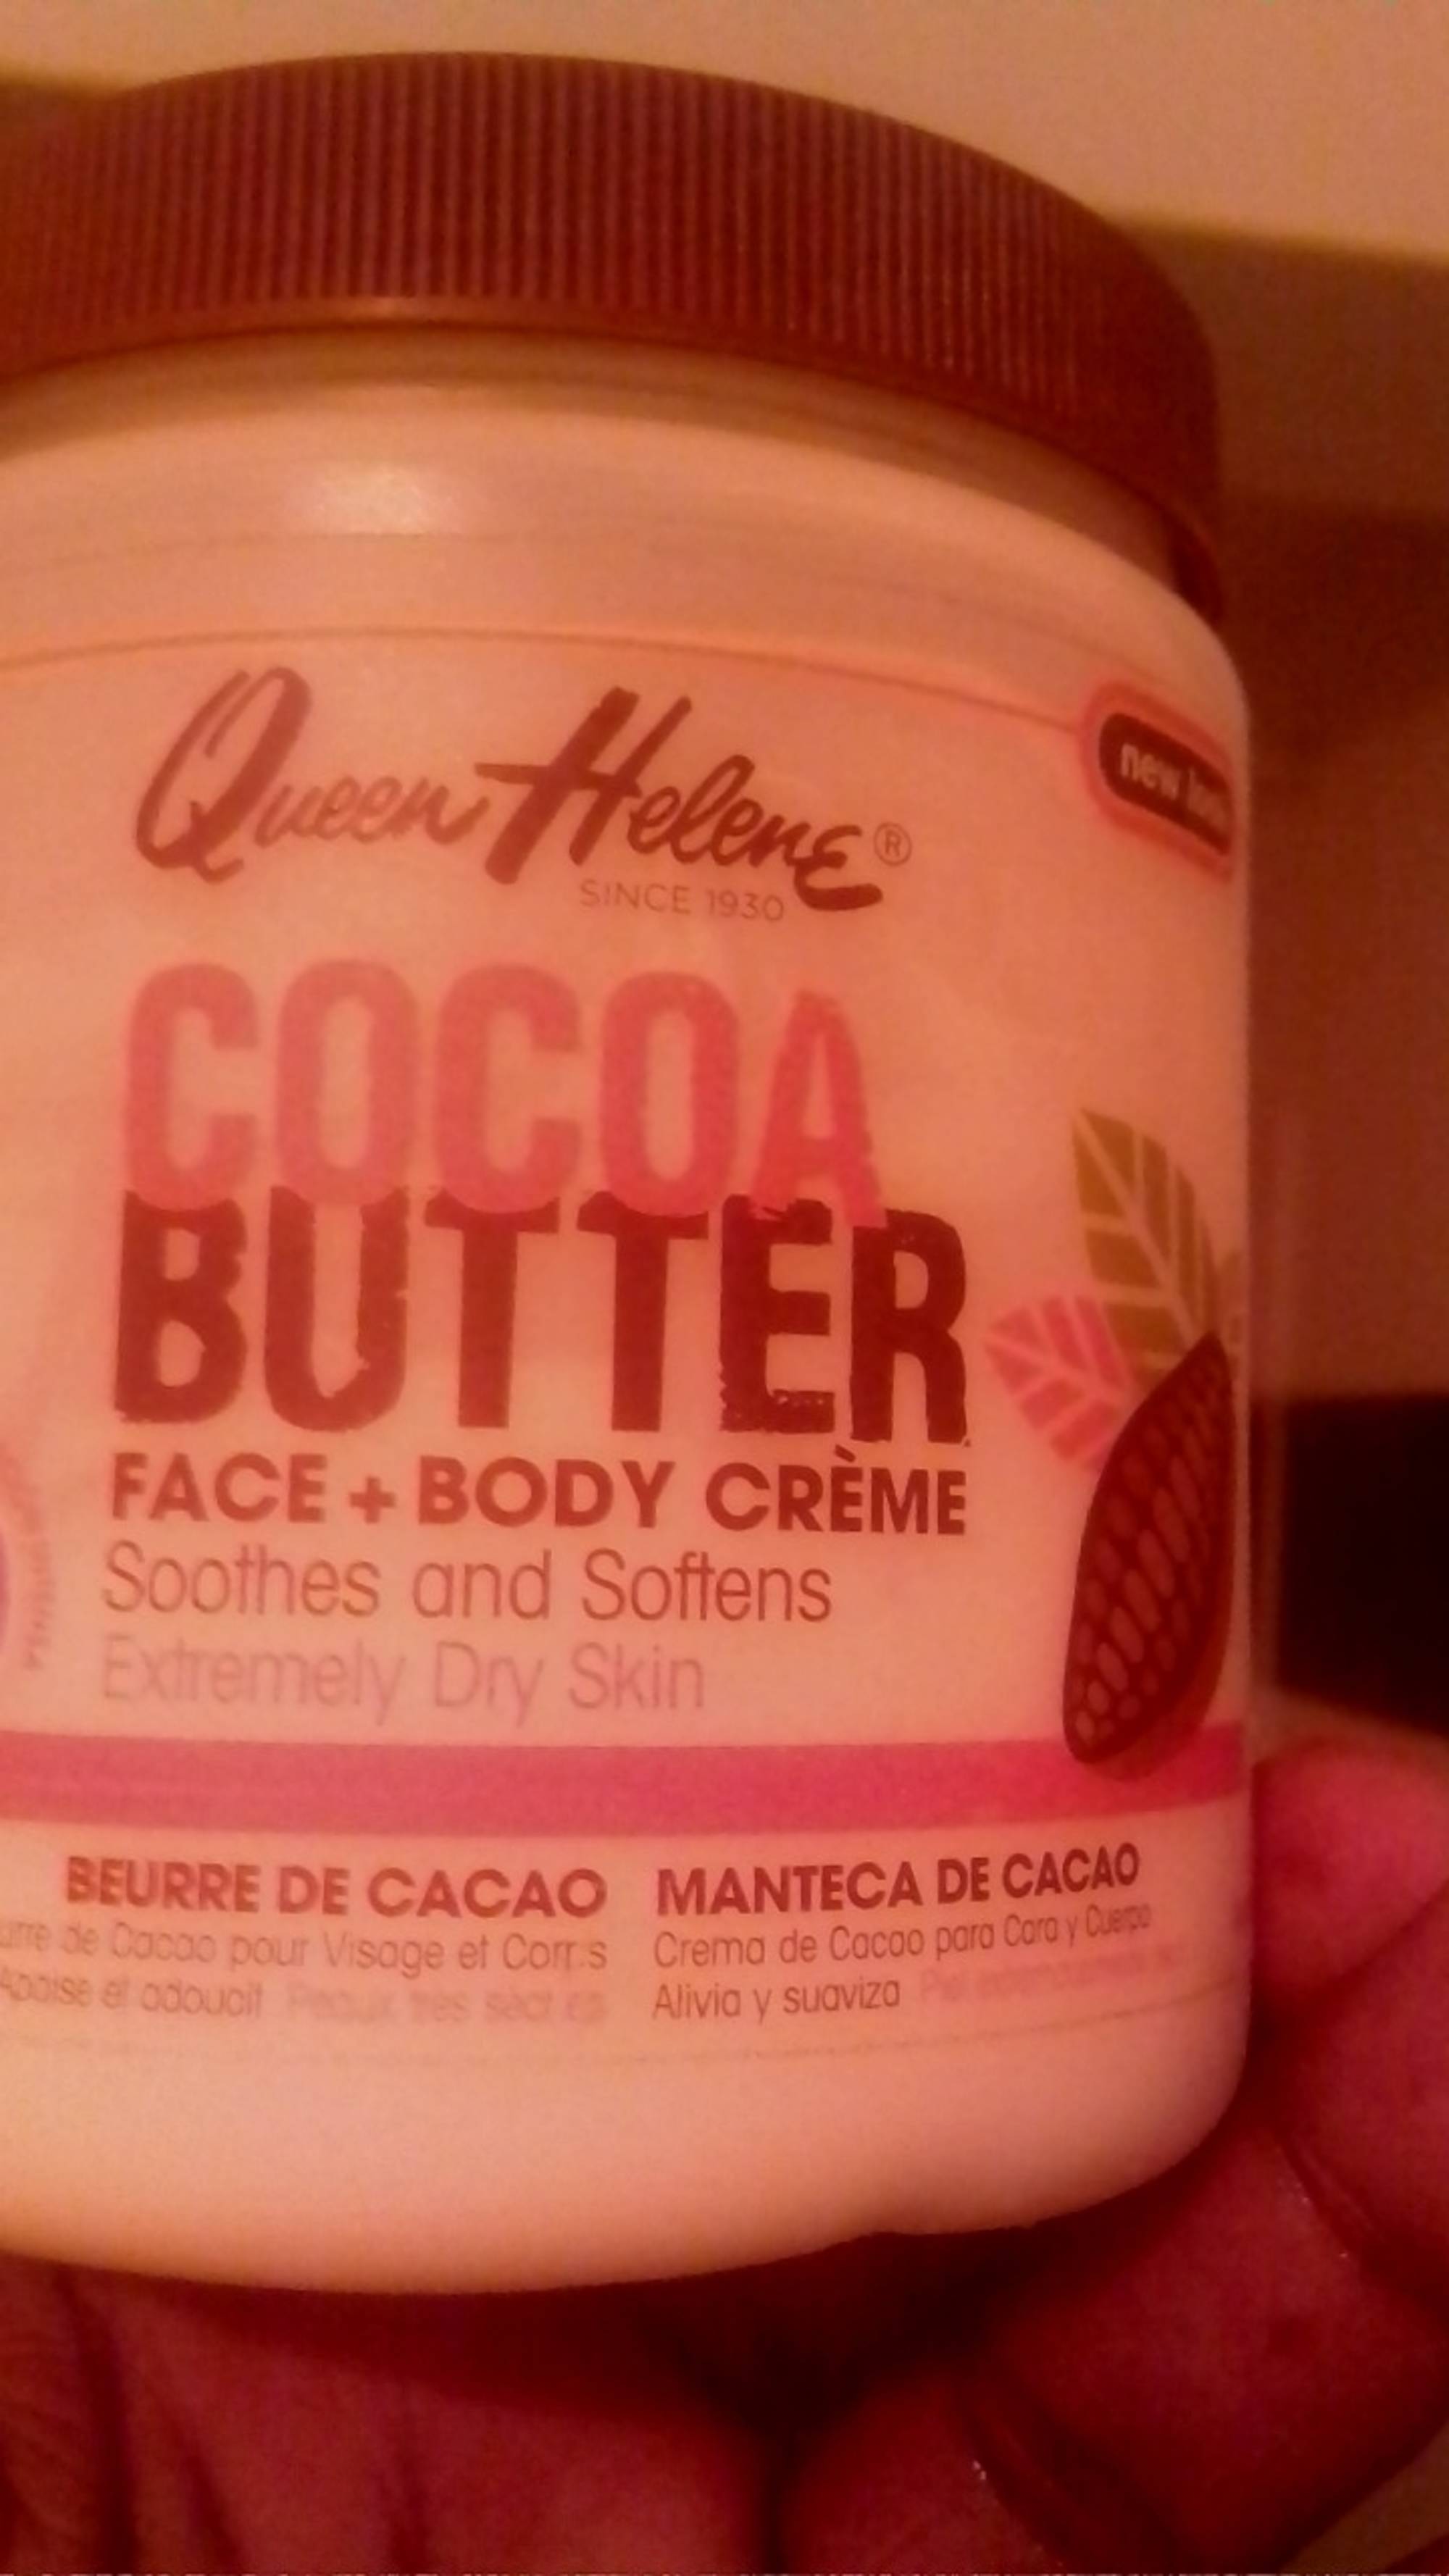 QUEEN HELENE - Cocoa Butter - Face + Body Crème